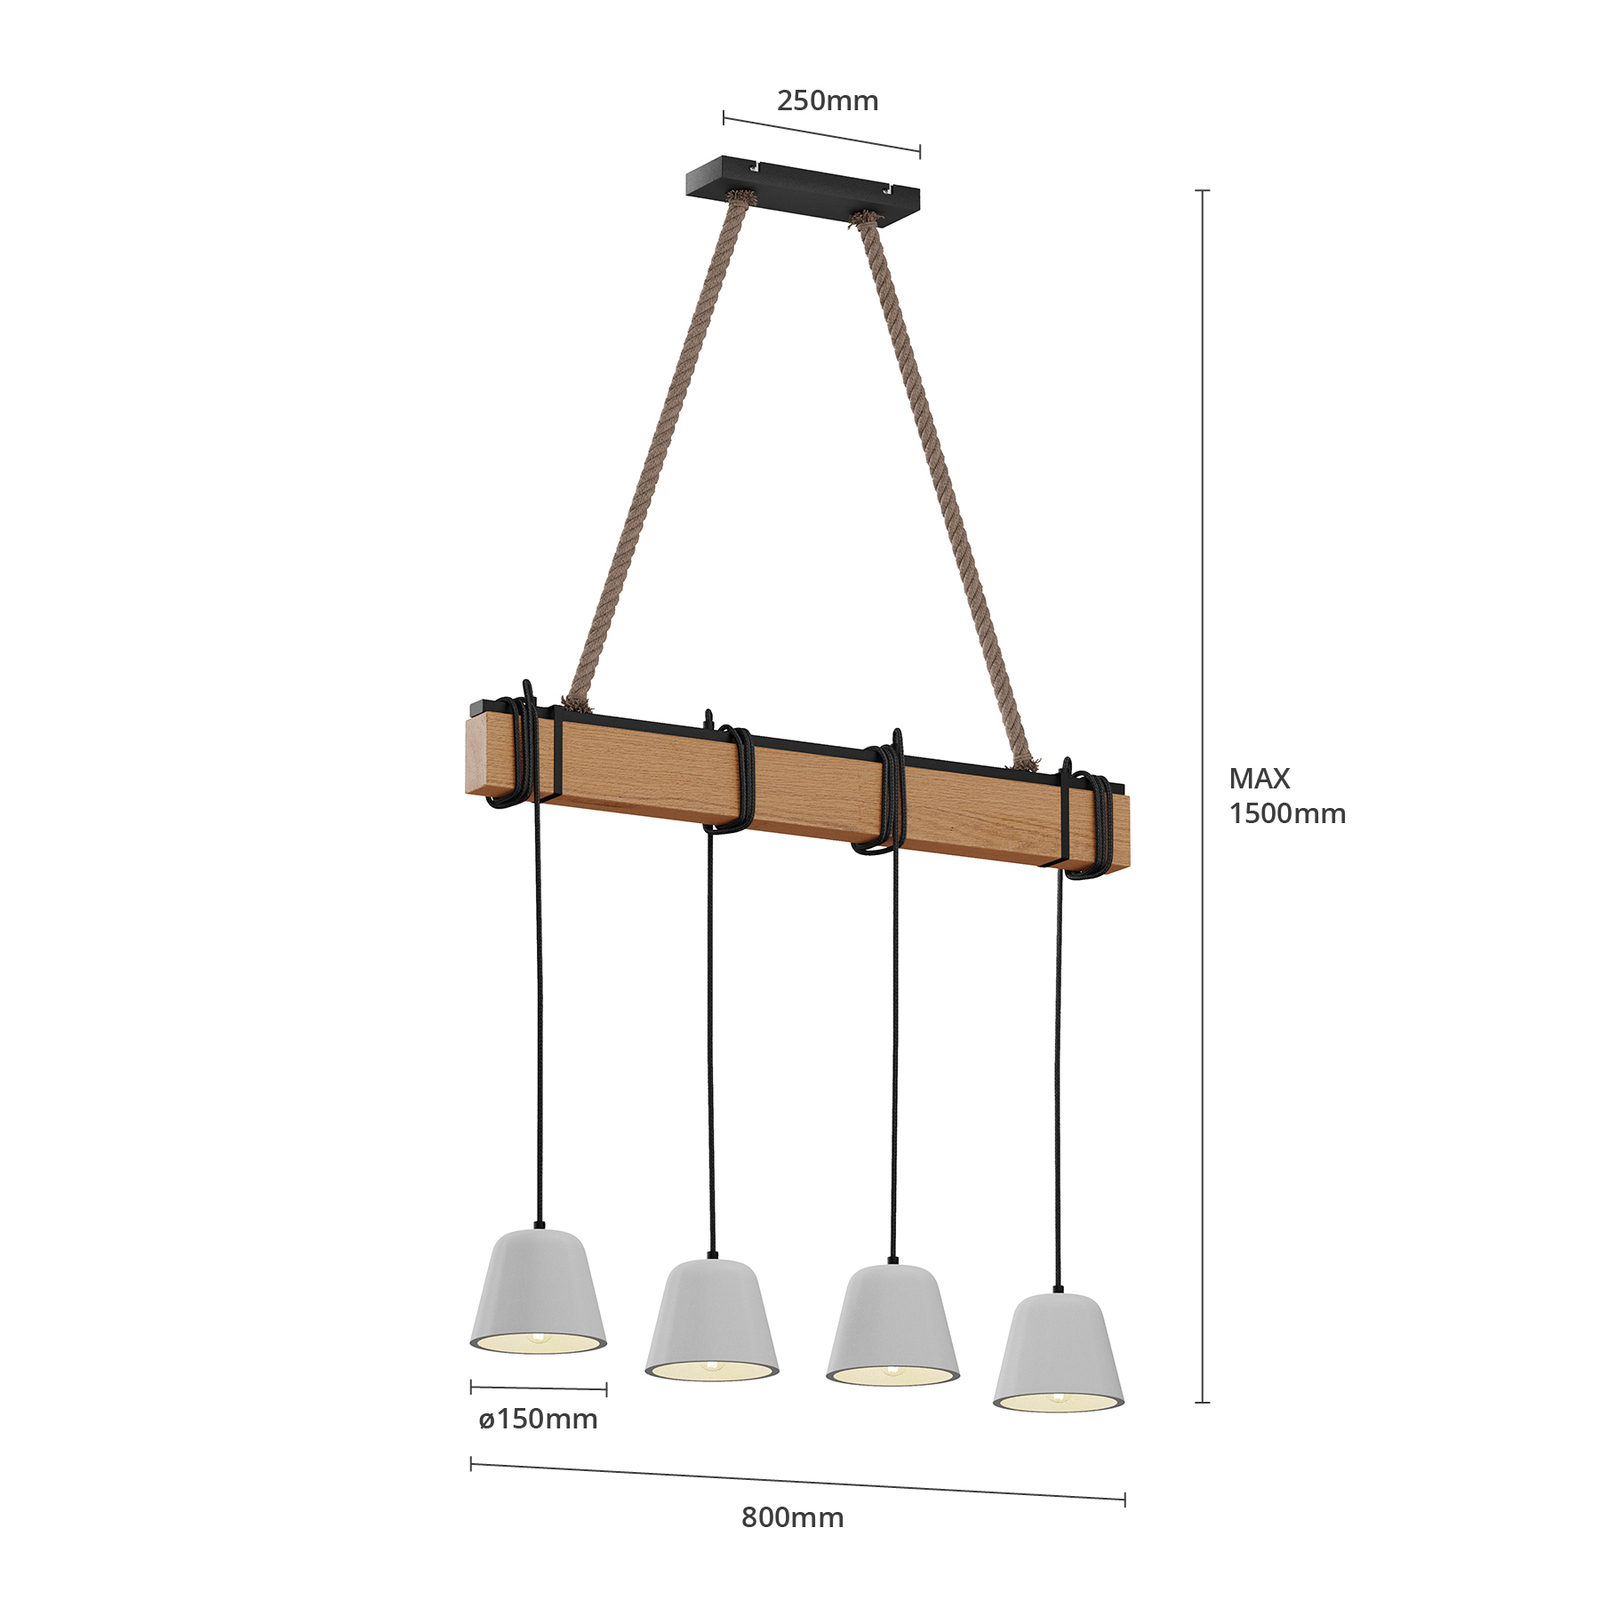 Lucande Hakona wooden hanging light